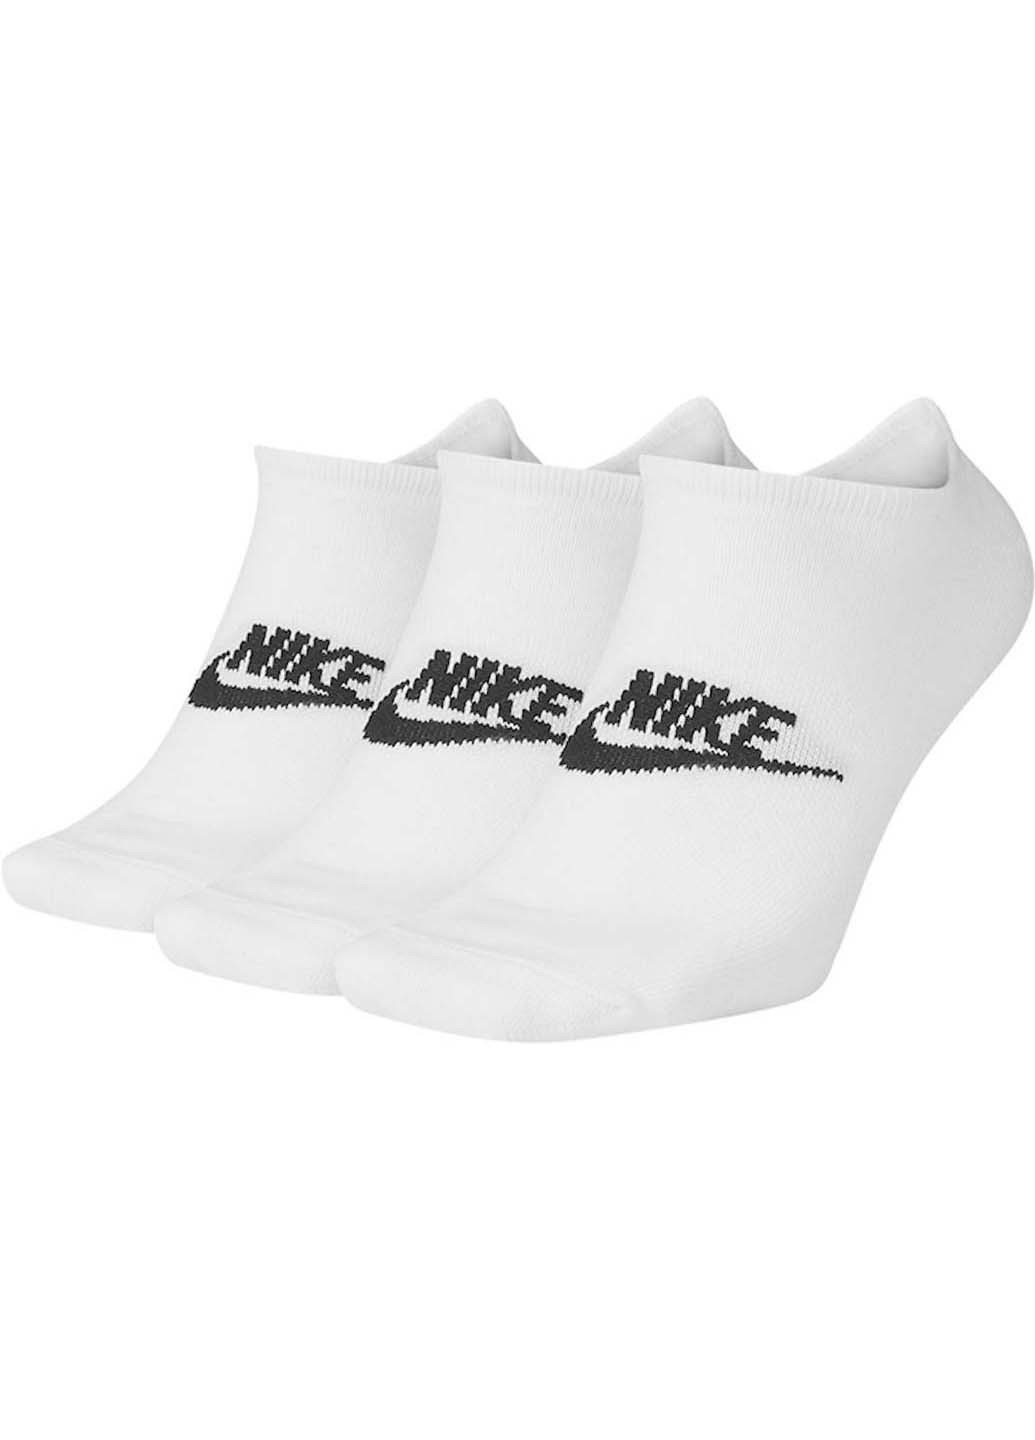 Носки Nike no show everyday essential 3-pack (256614915)